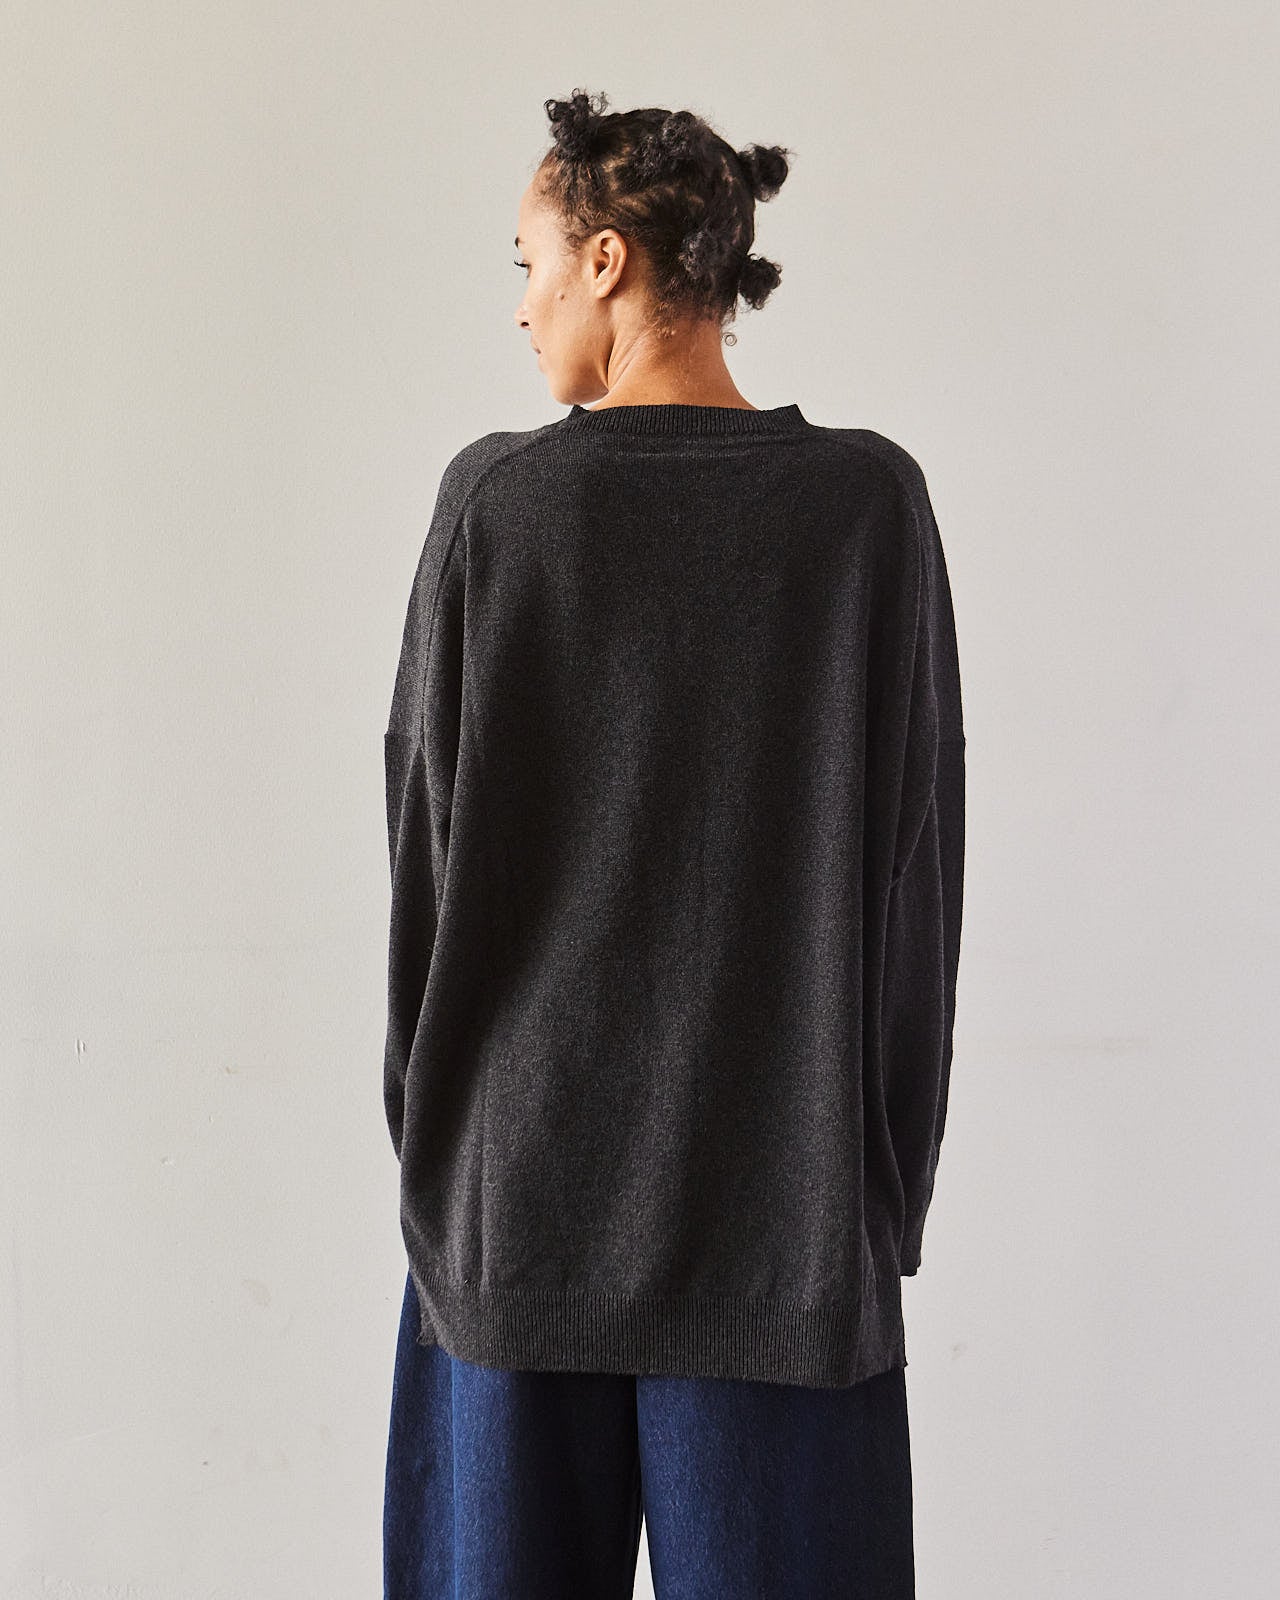 Cordera Cashmere V-neck Sweater, Anthracite